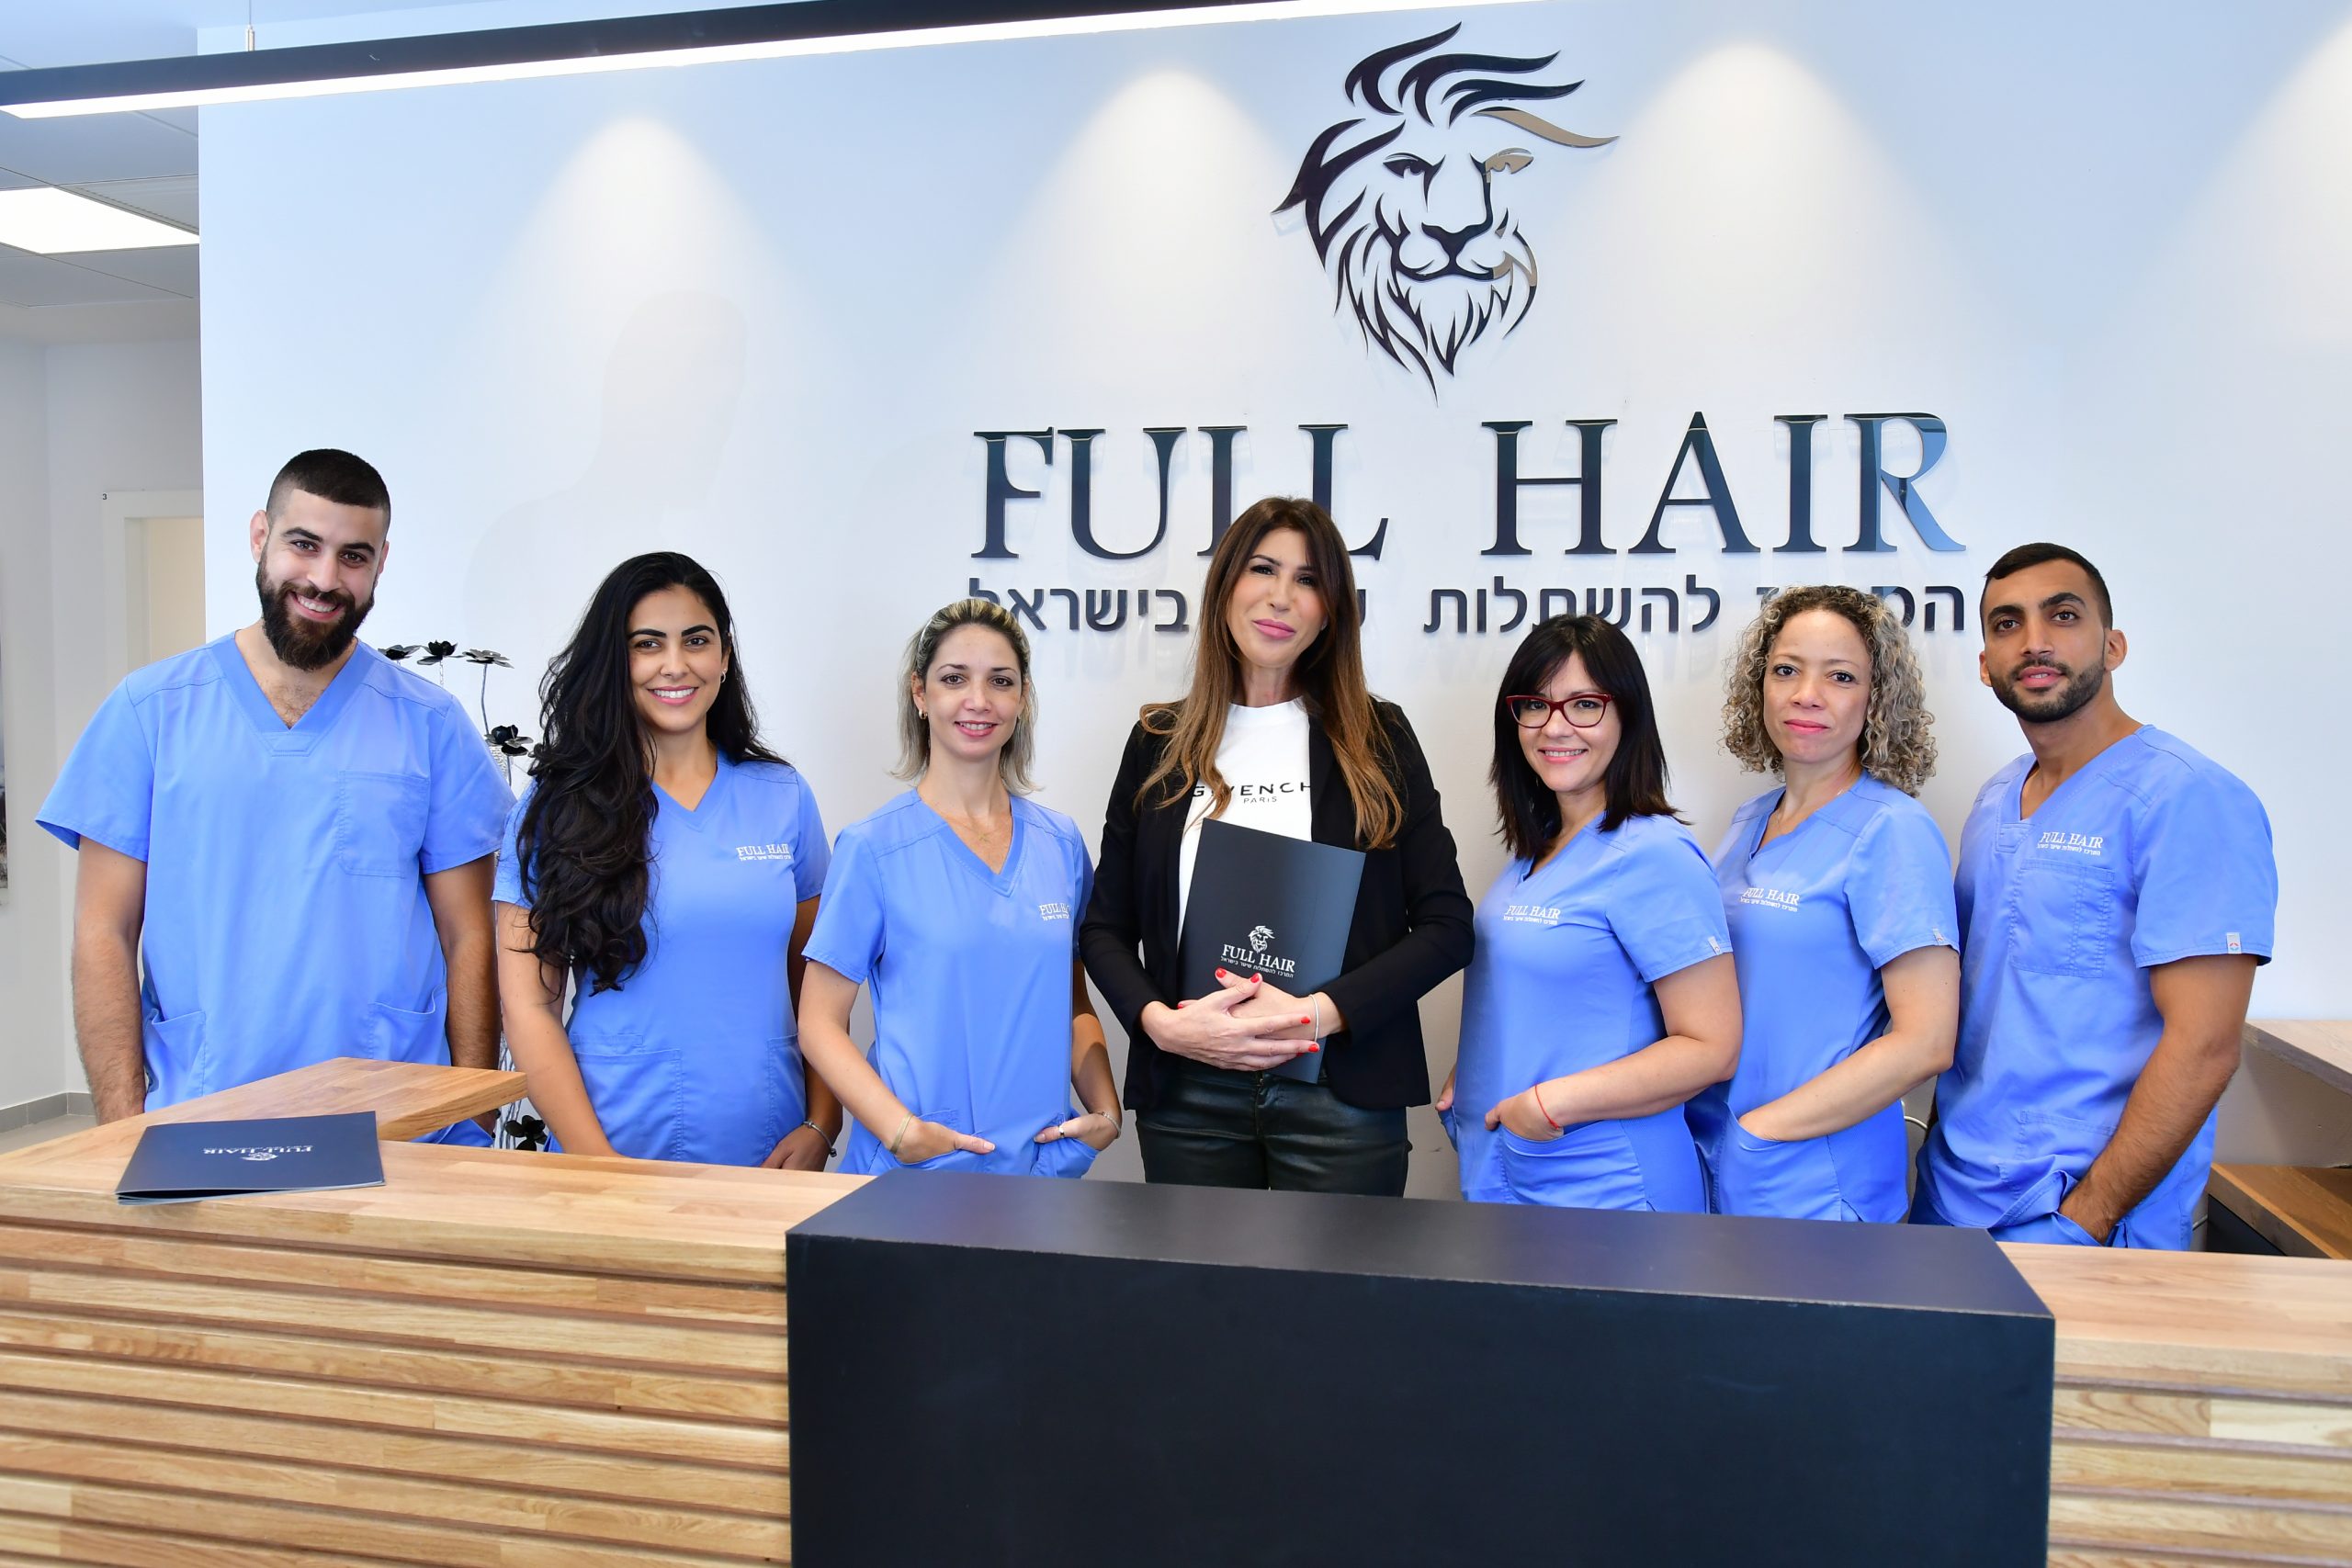 השתלת שיער בישראל או בטורקיה – מדוע עדיף לבחור בישראל ובמרכז Full Hair Medical?